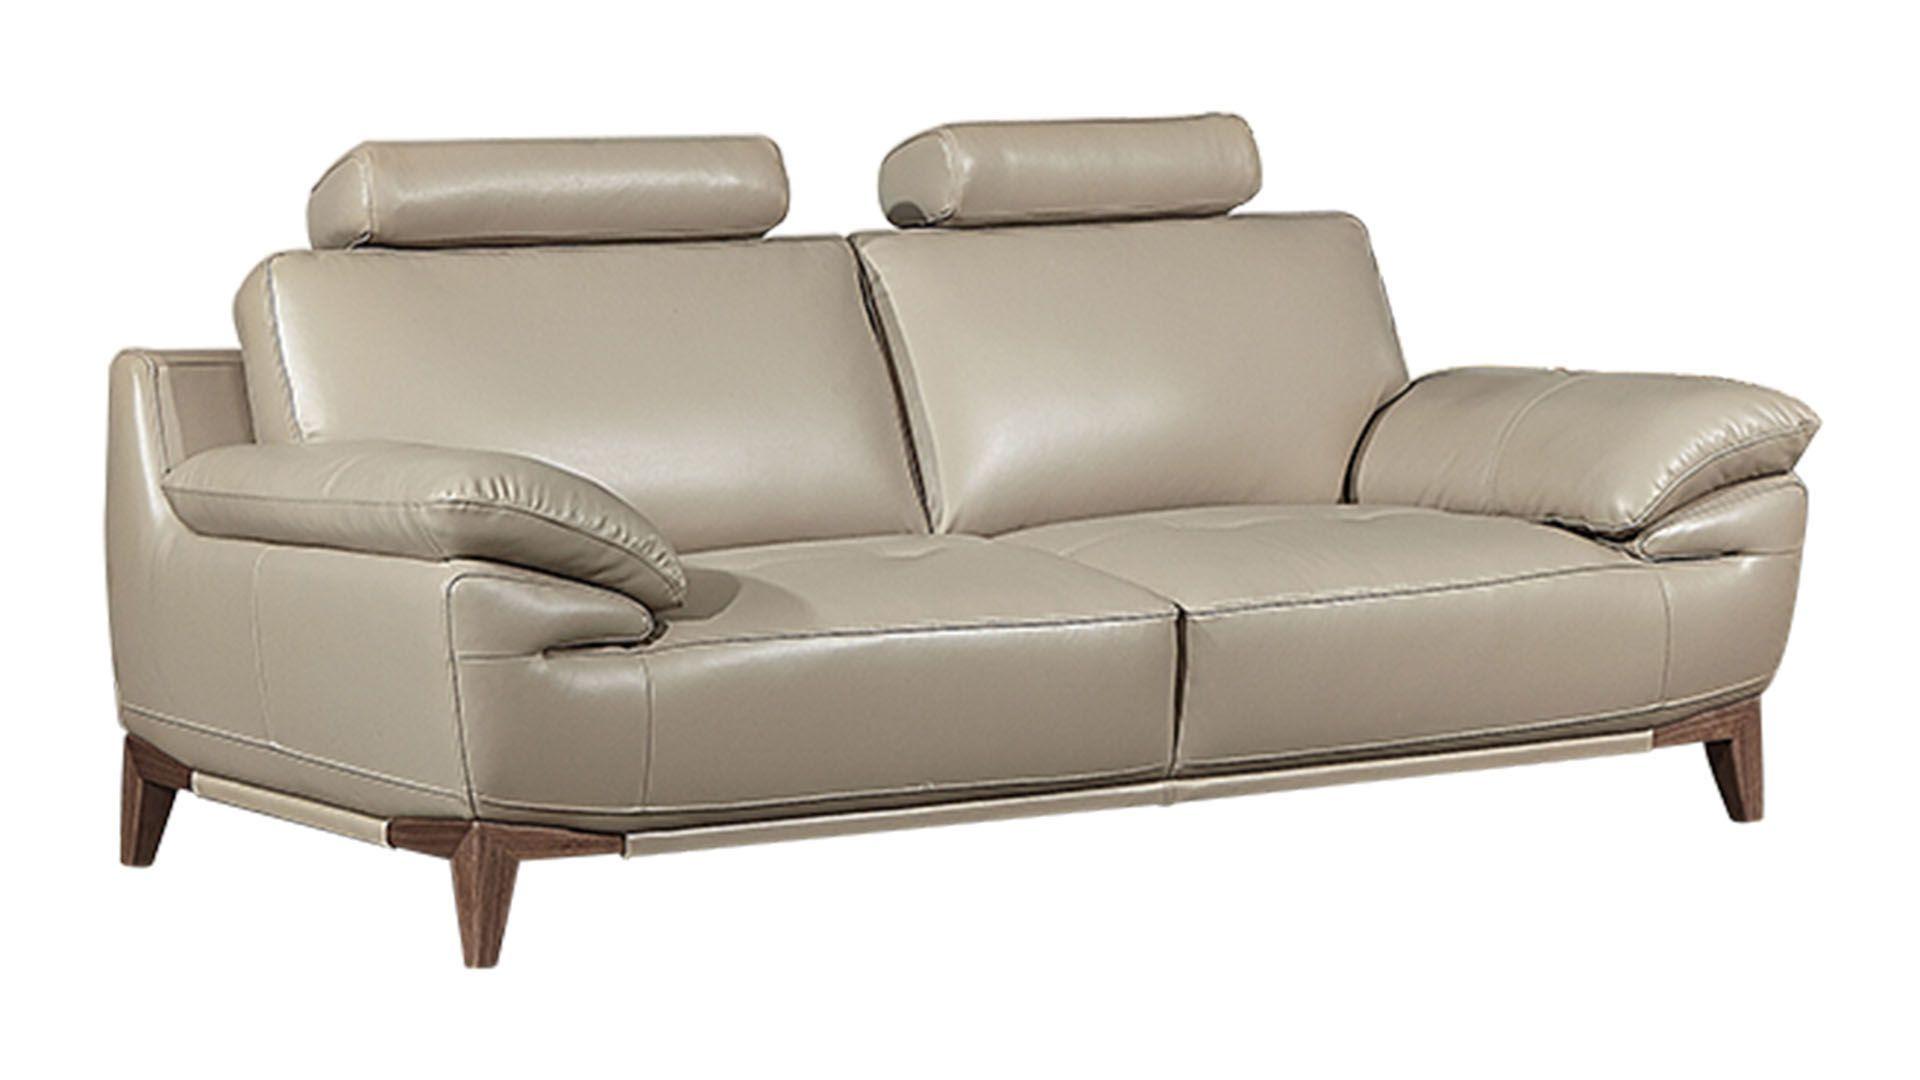 Contemporary, Modern Sofa EK028-TAN-SF EK028-TAN-SF in Tan Top grain leather